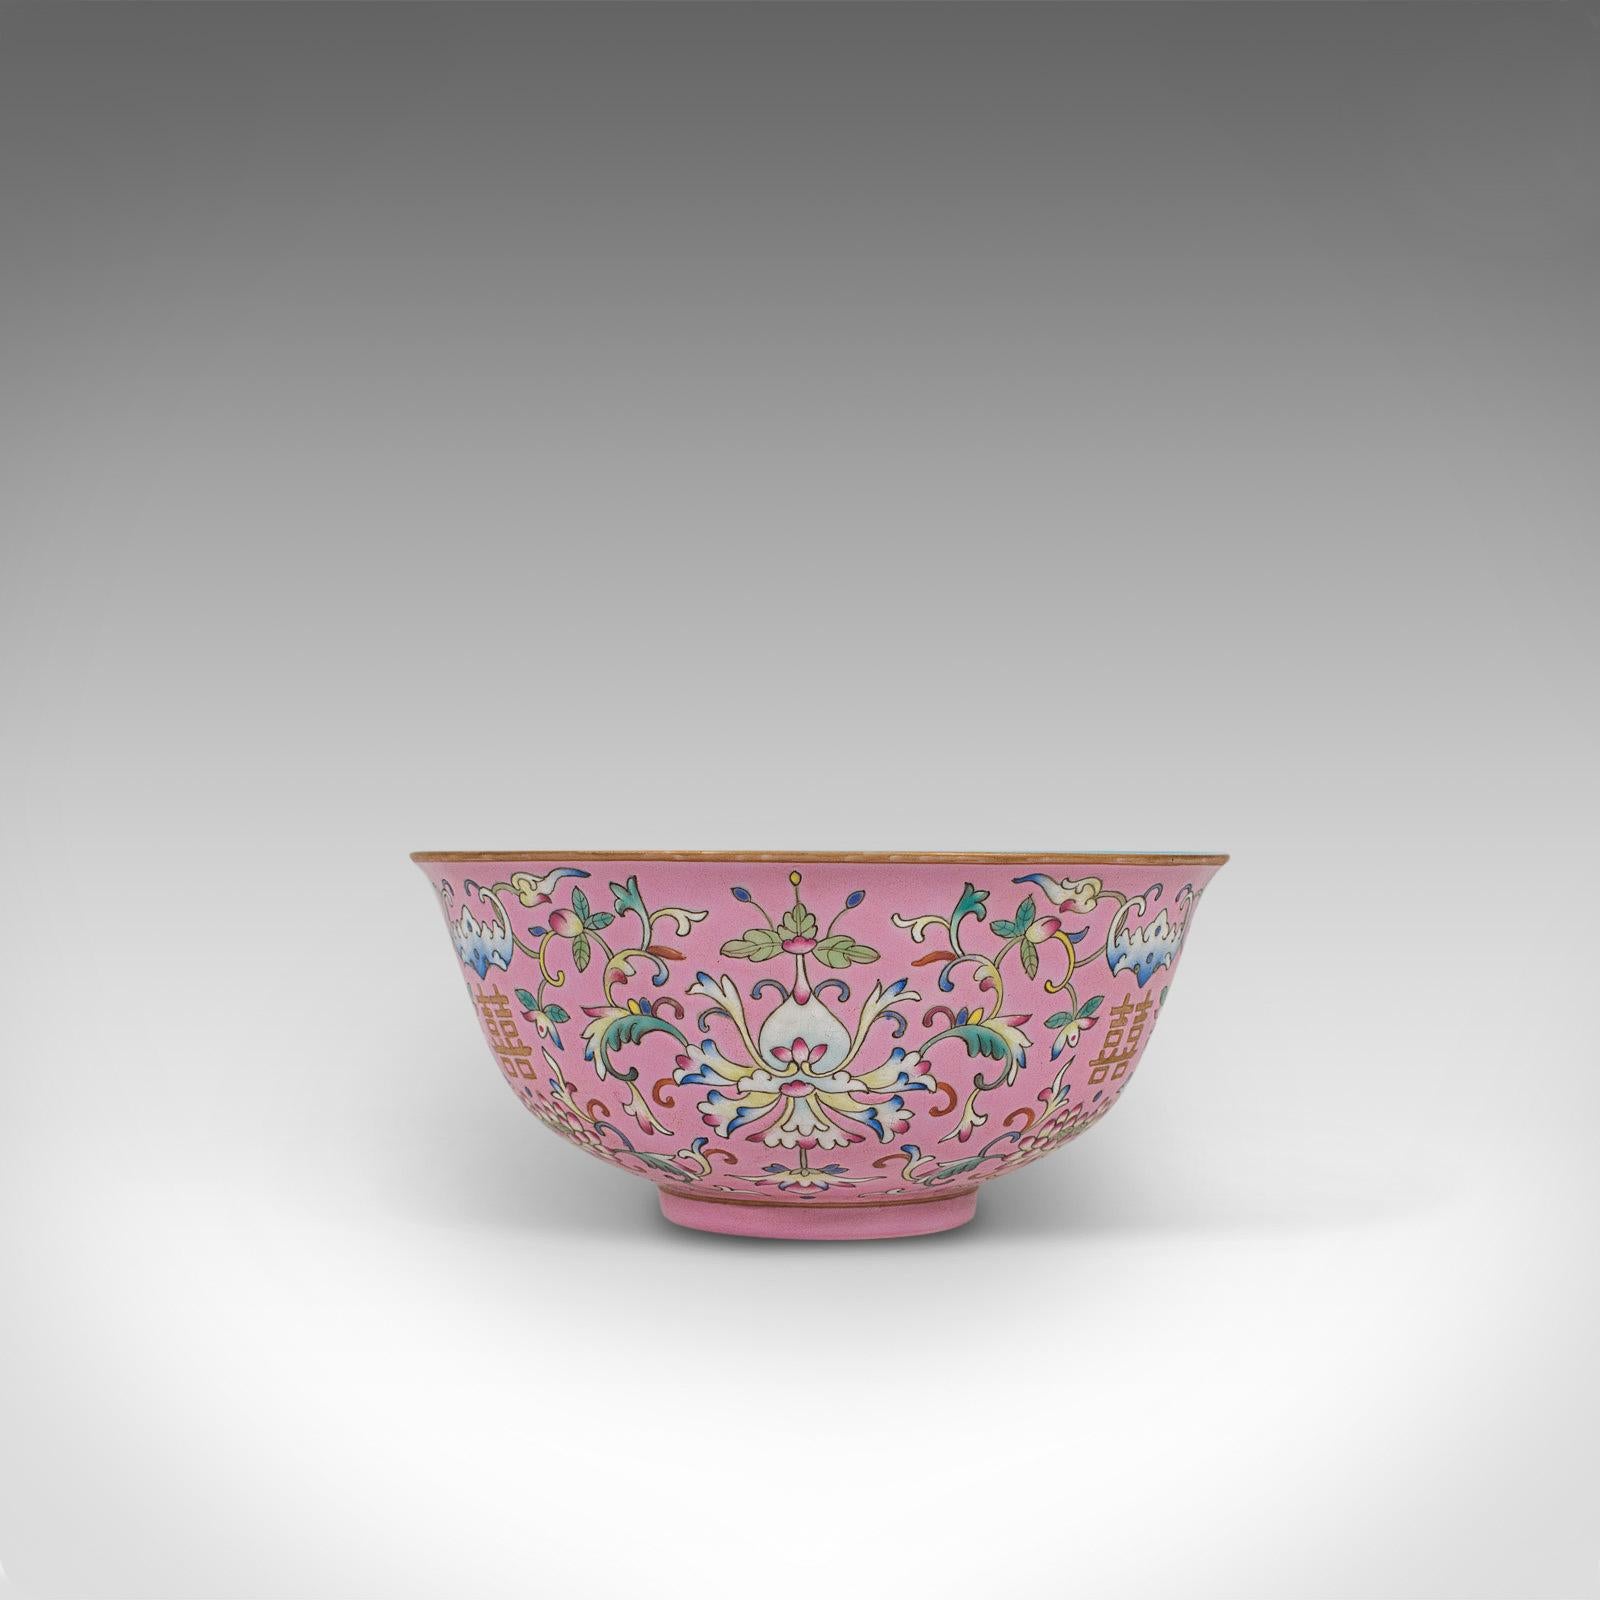 Antique Decorative Marriage Bowl, Chinese, Ceramic, Ceremonial, Dish, circa 1880 3